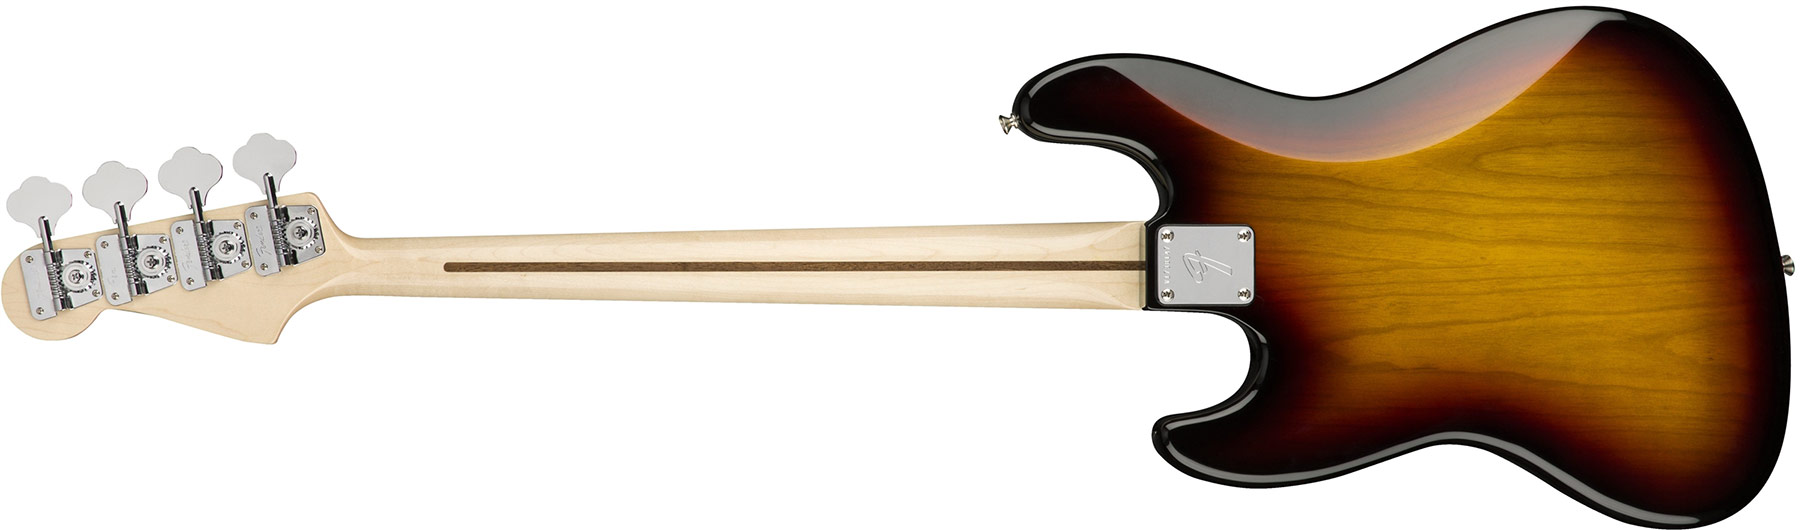 Fender Jazz Bass '70s American Original Usa Mn - 3-color Sunburst - Bajo eléctrico de cuerpo sólido - Variation 2